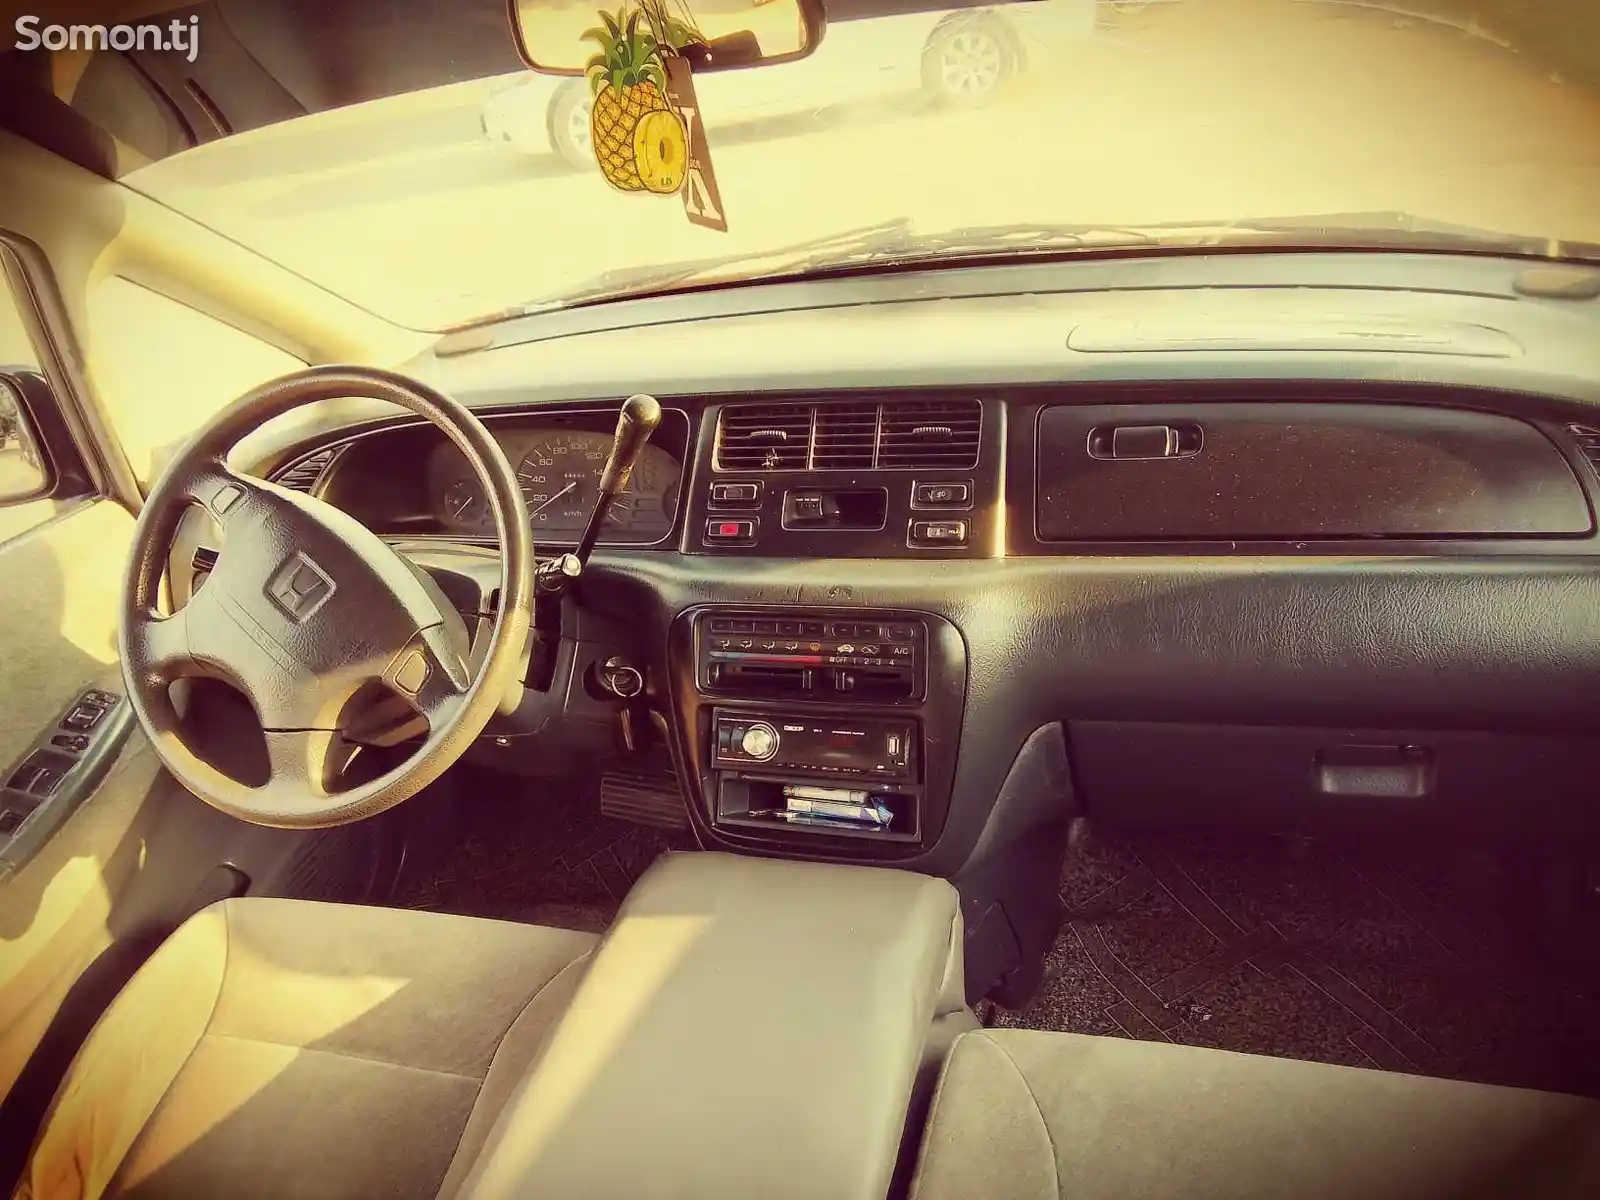 Honda Odyssey, 1997-2